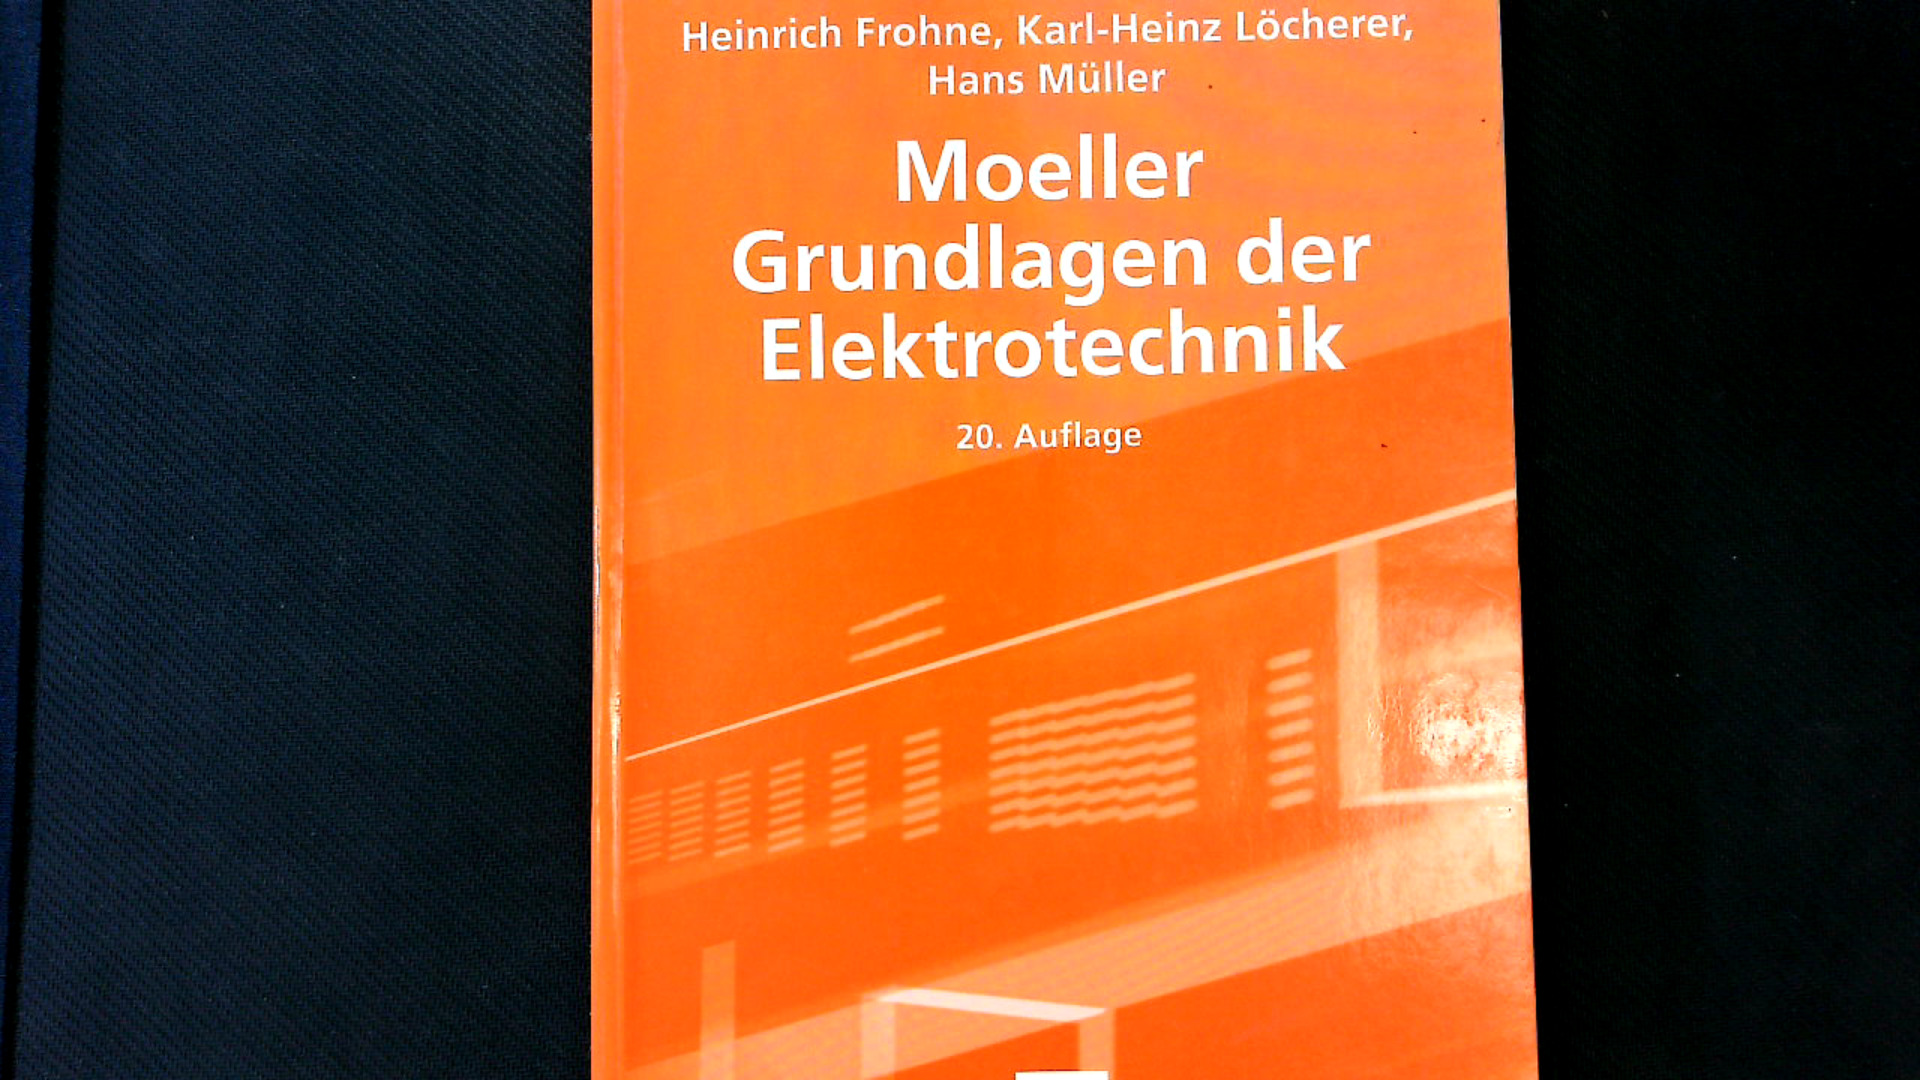 Moeller Grundlagen der Elektrotechnik. Leitfaden der Elektrotechnik Lehrbuch : Elektrotechnik. - Meins, Jürgen, Rainer Scheithauer Herrmann Weidenfeller u. a.